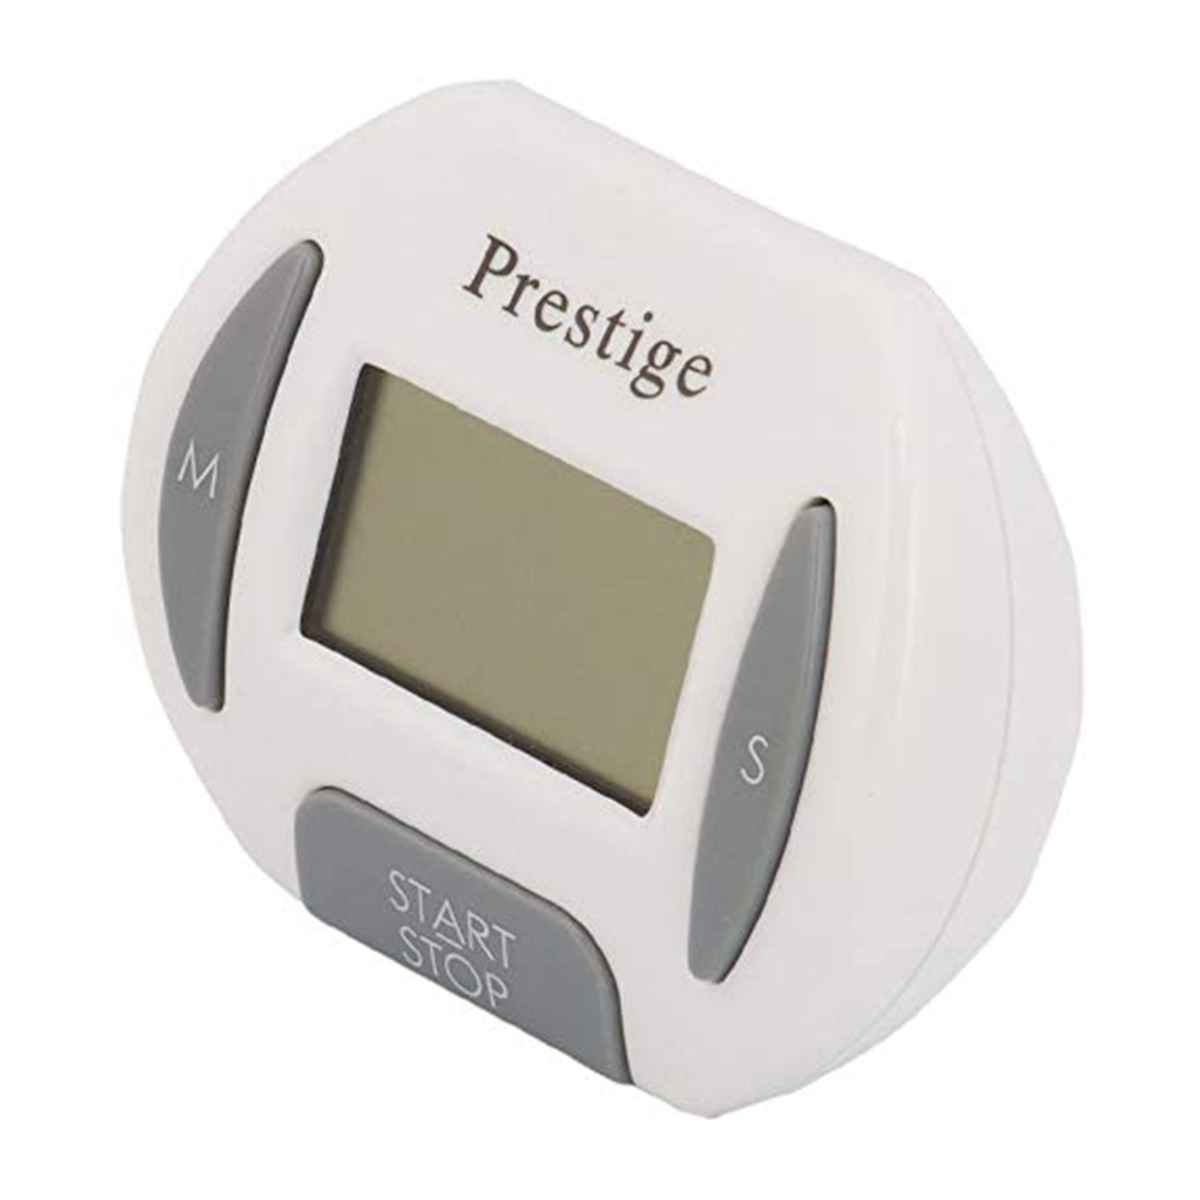 Prestige PR9610 Digital Timer, White, 11.6 cm x 14.4 cm x 2.6 cm